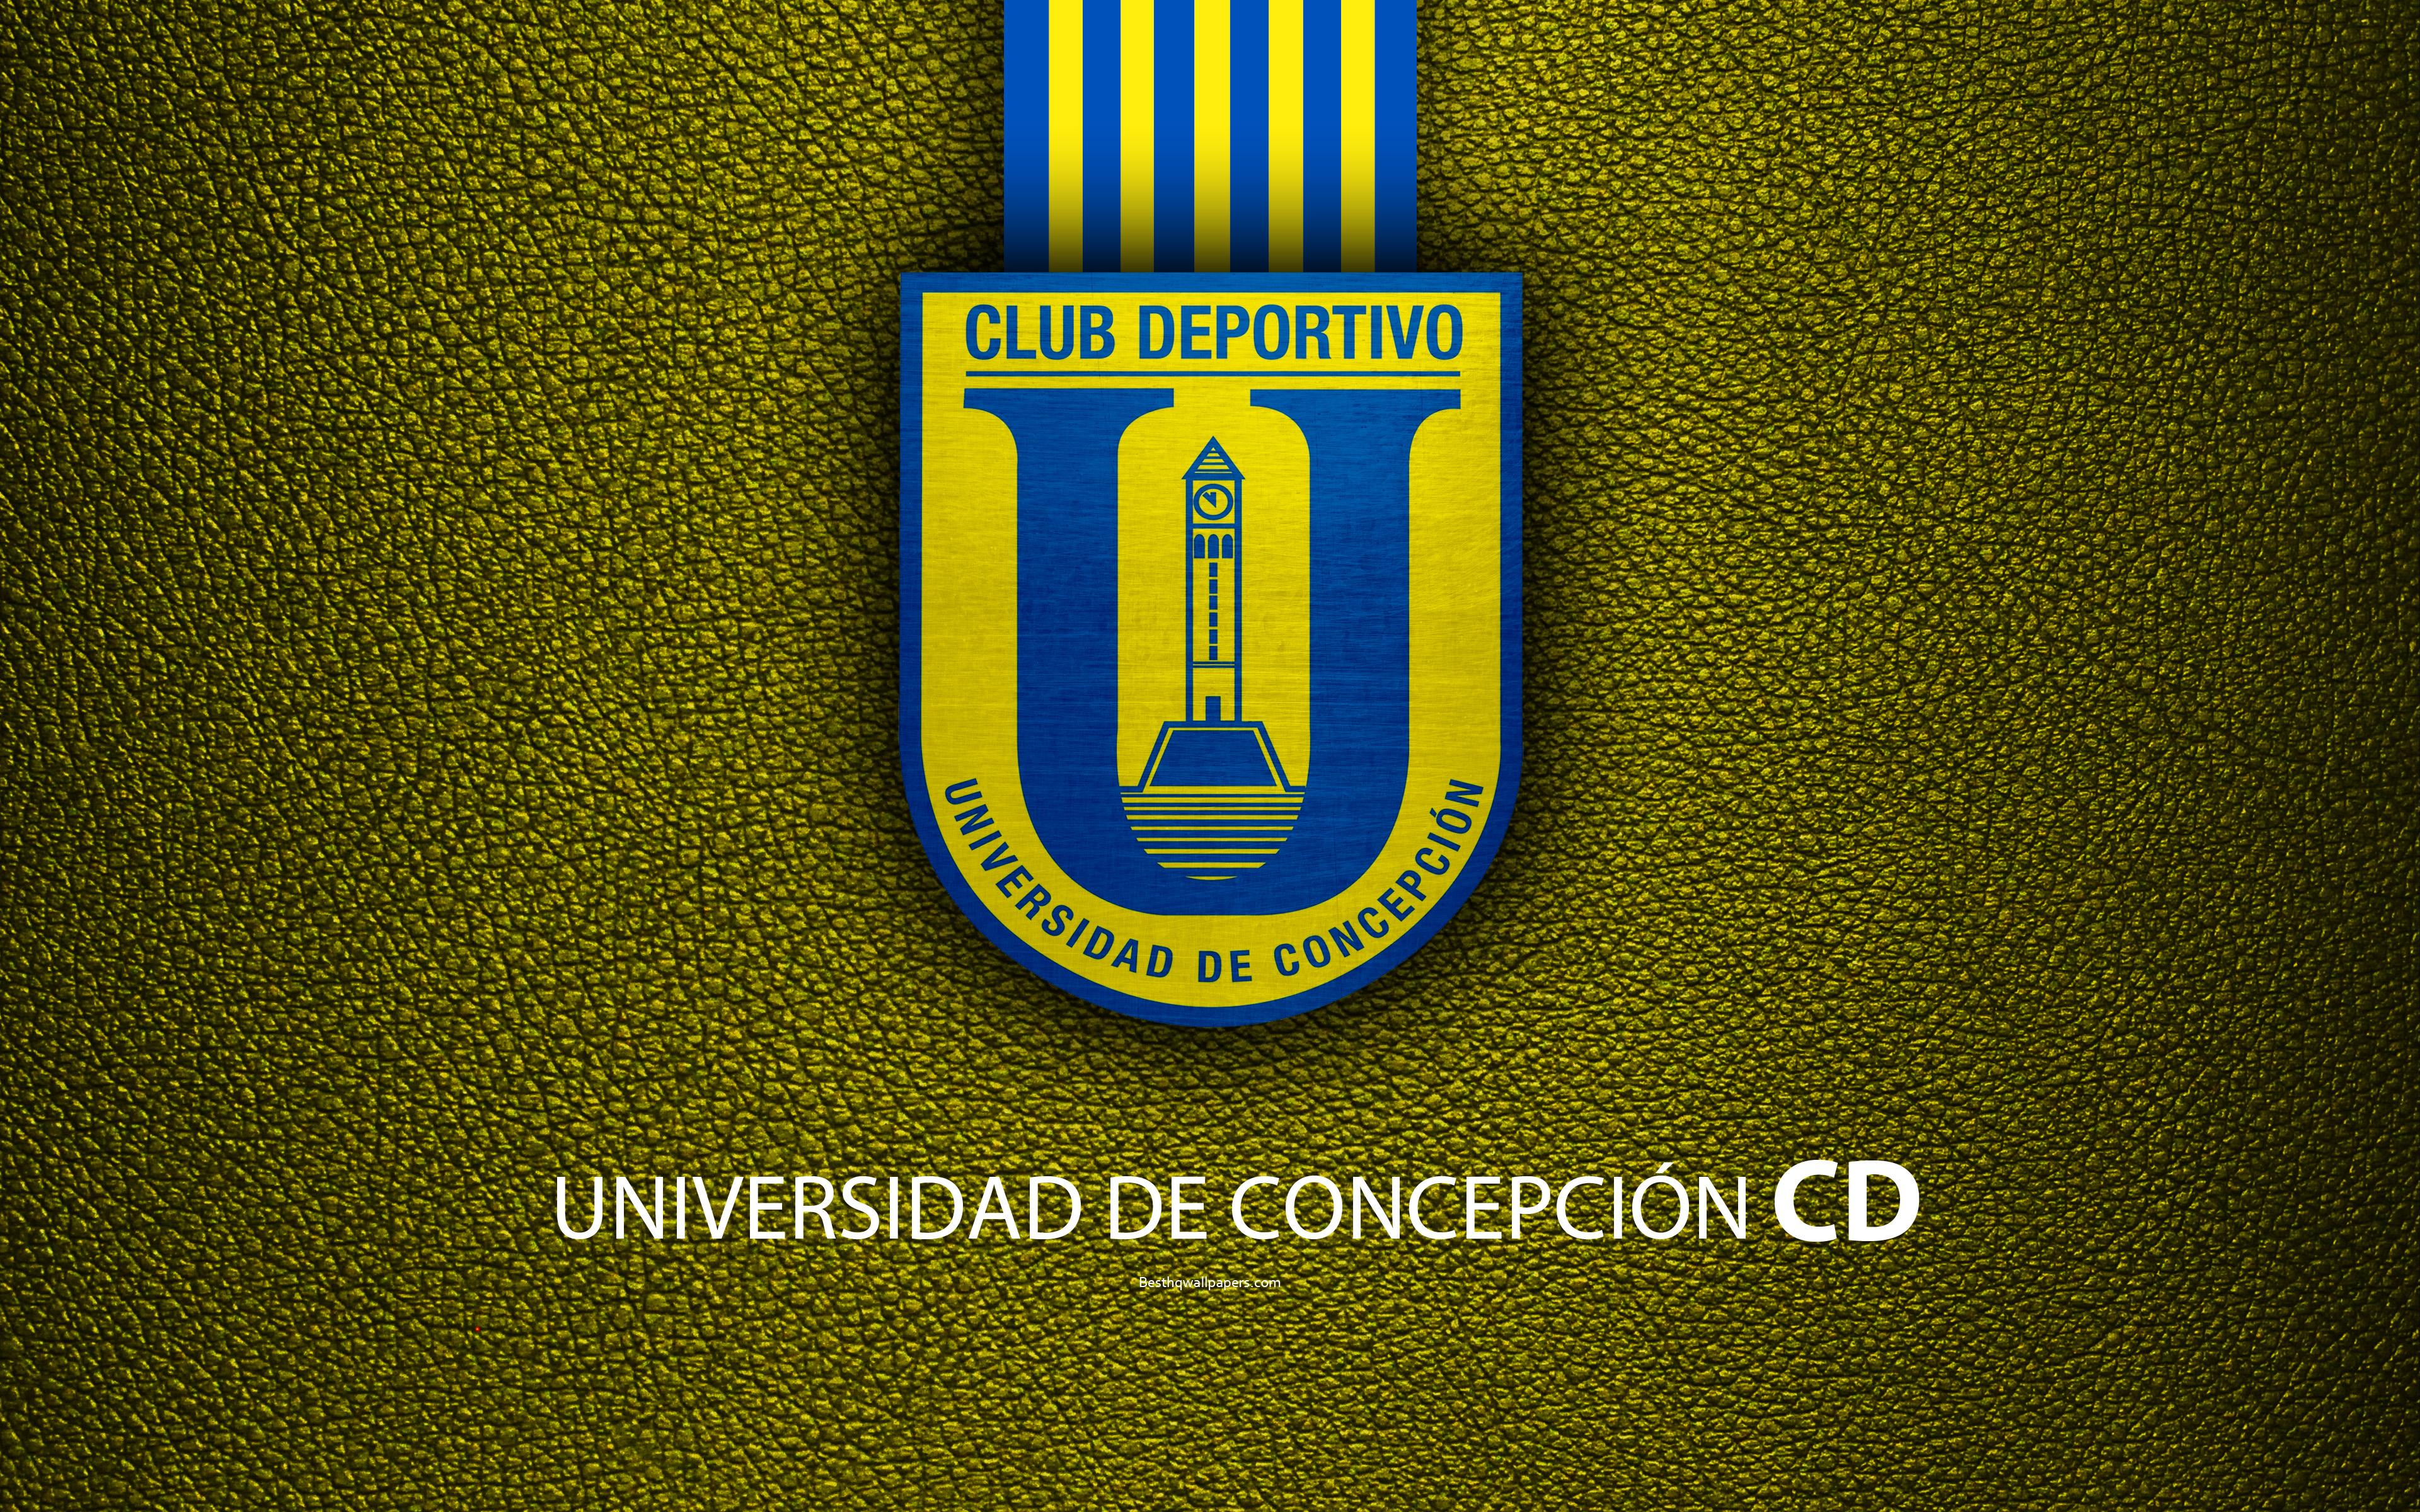 Download wallpaper Club Deportivo Universidad de Concepcion, 4k